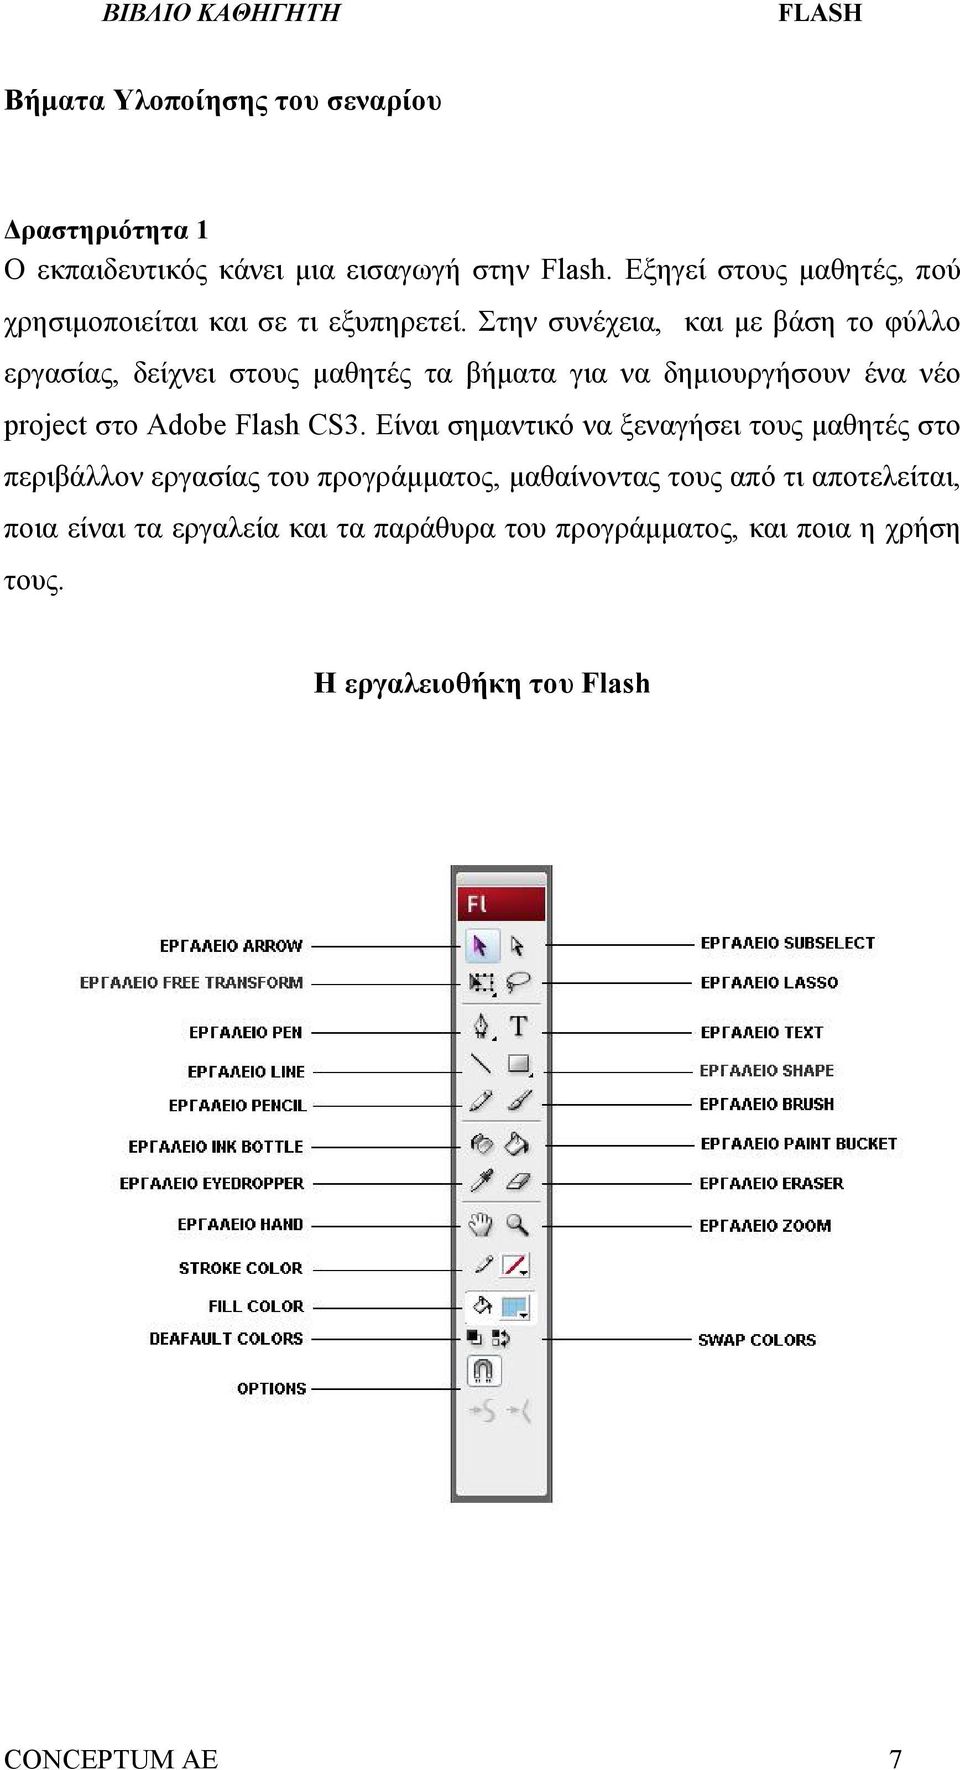 Στην συνέχεια, και με βάση το φύλλο εργασίας, δείχνει στους μαθητές τα βήματα για να δημιουργήσουν ένα νέο project στο Adobe Flash